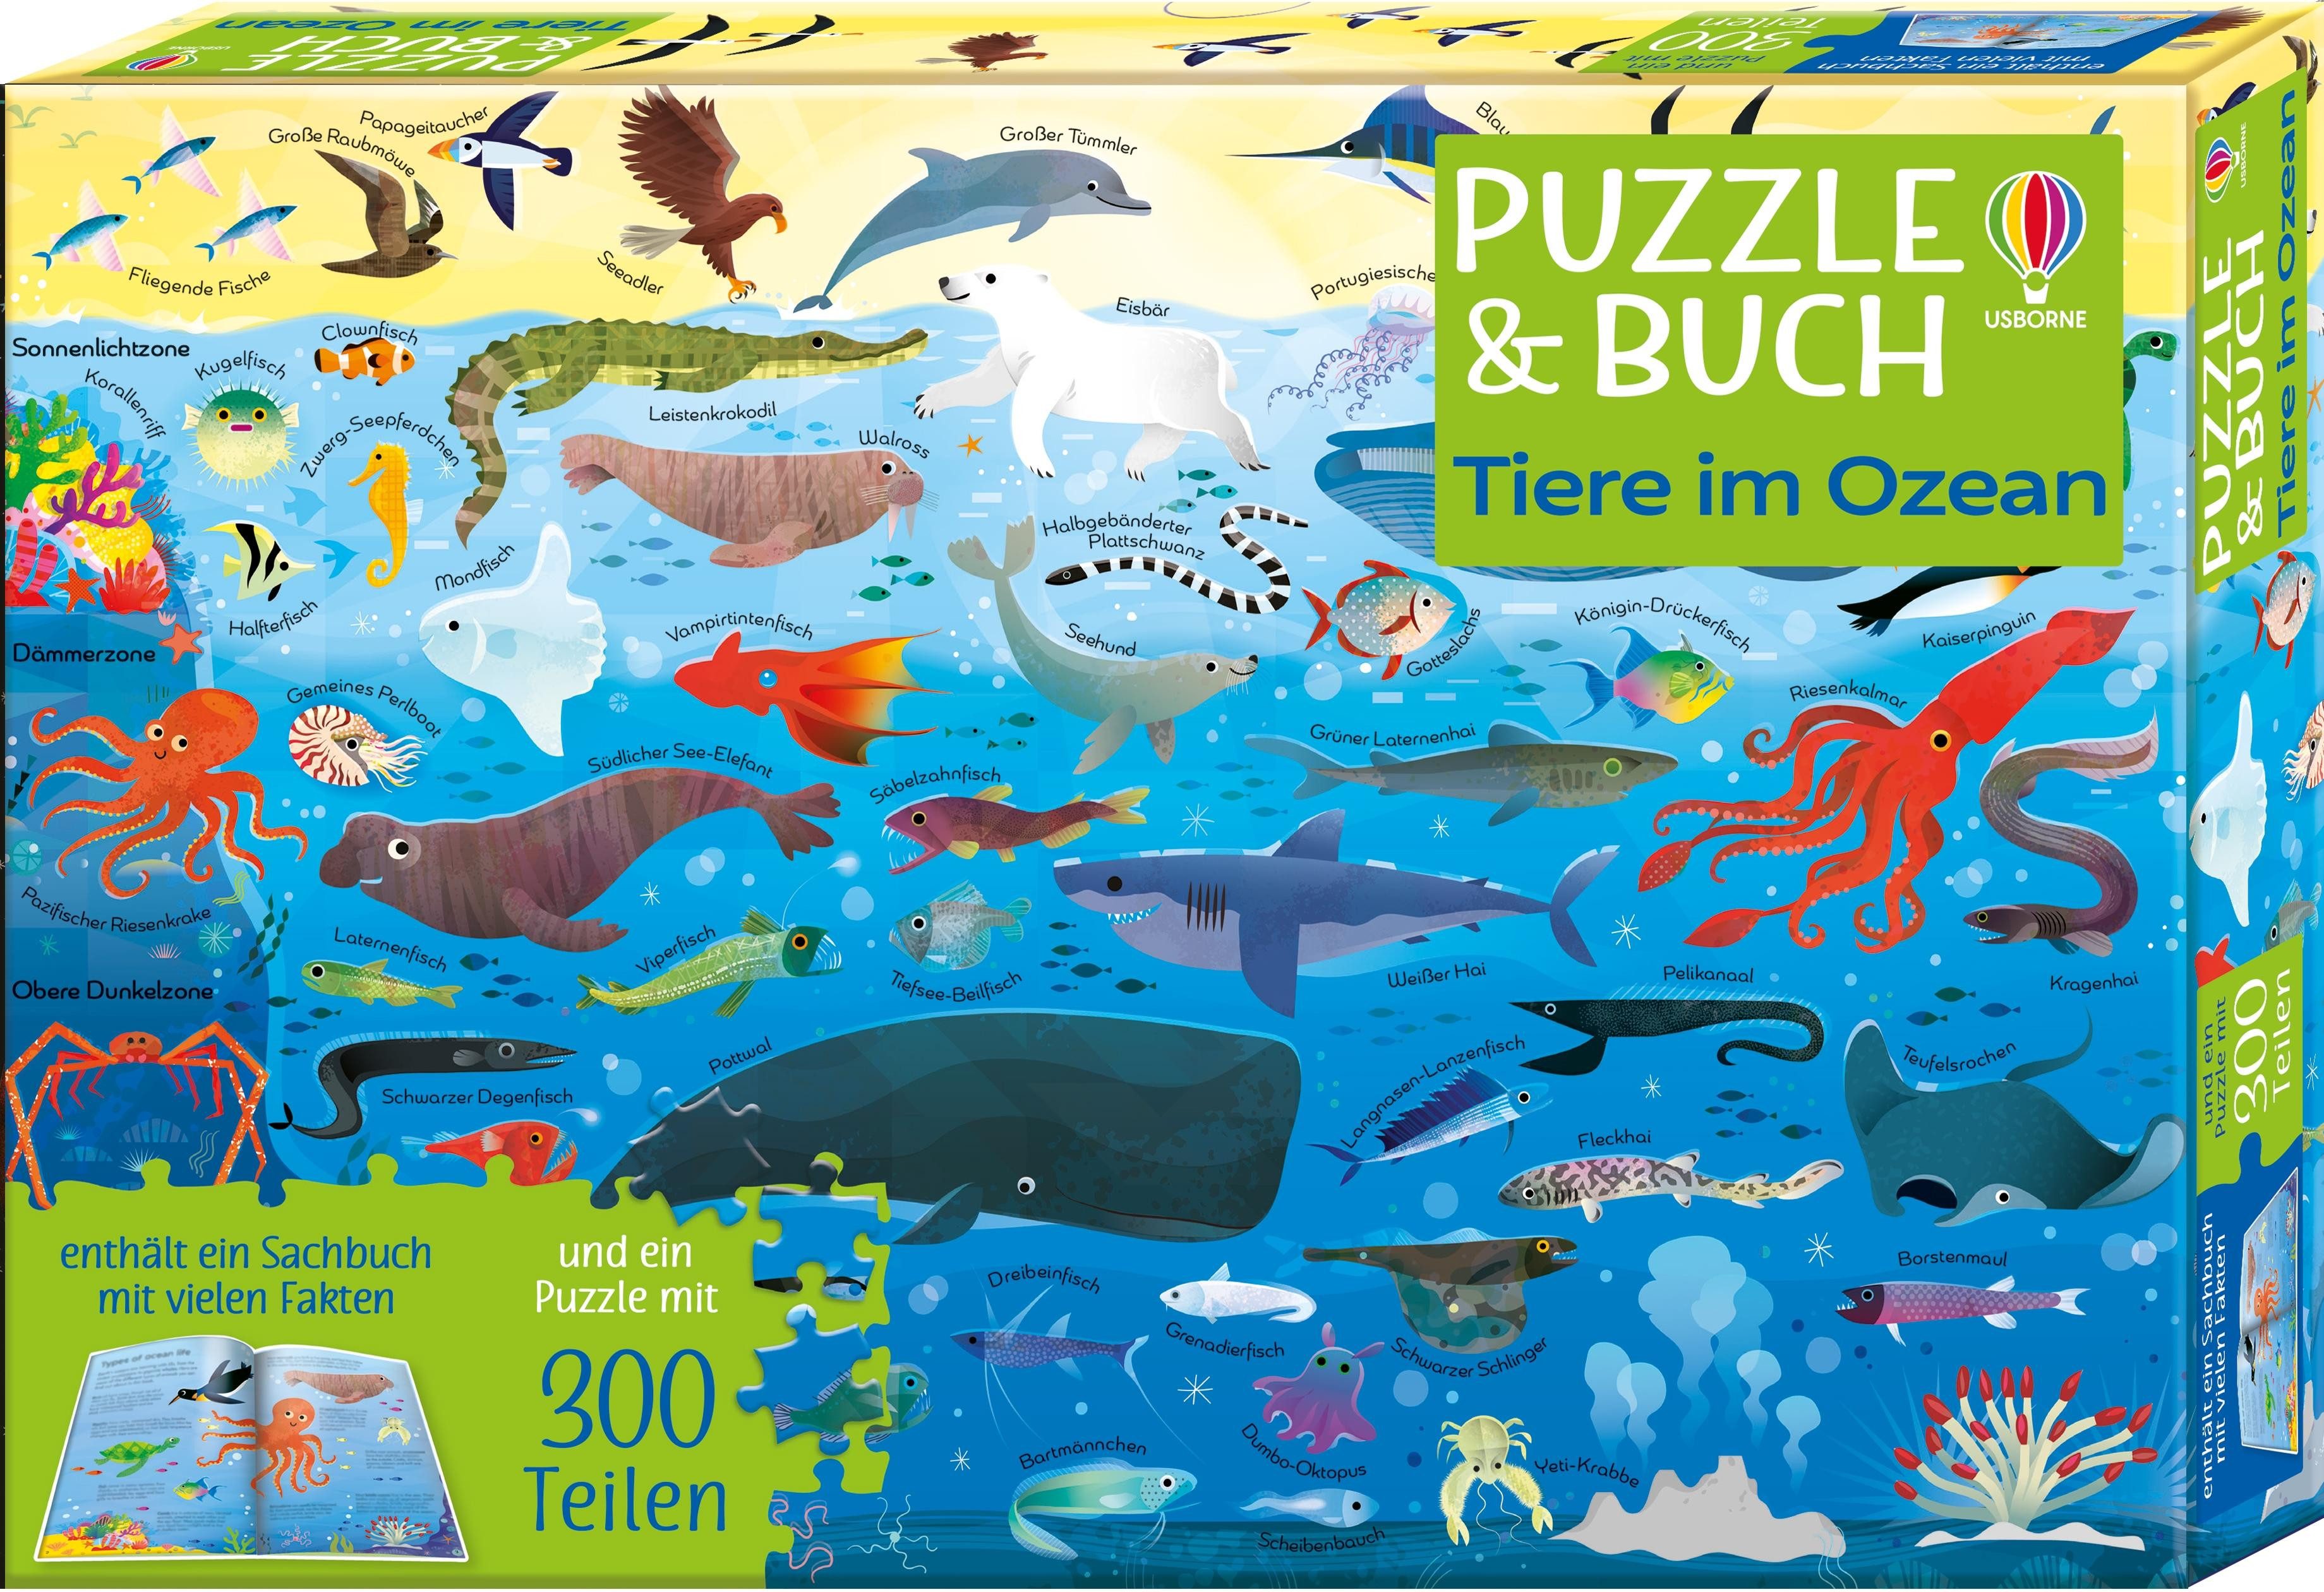 Usborne Verlag Puzzle Puzzle & Buch: Tiere im Ozean, Puzzleteile